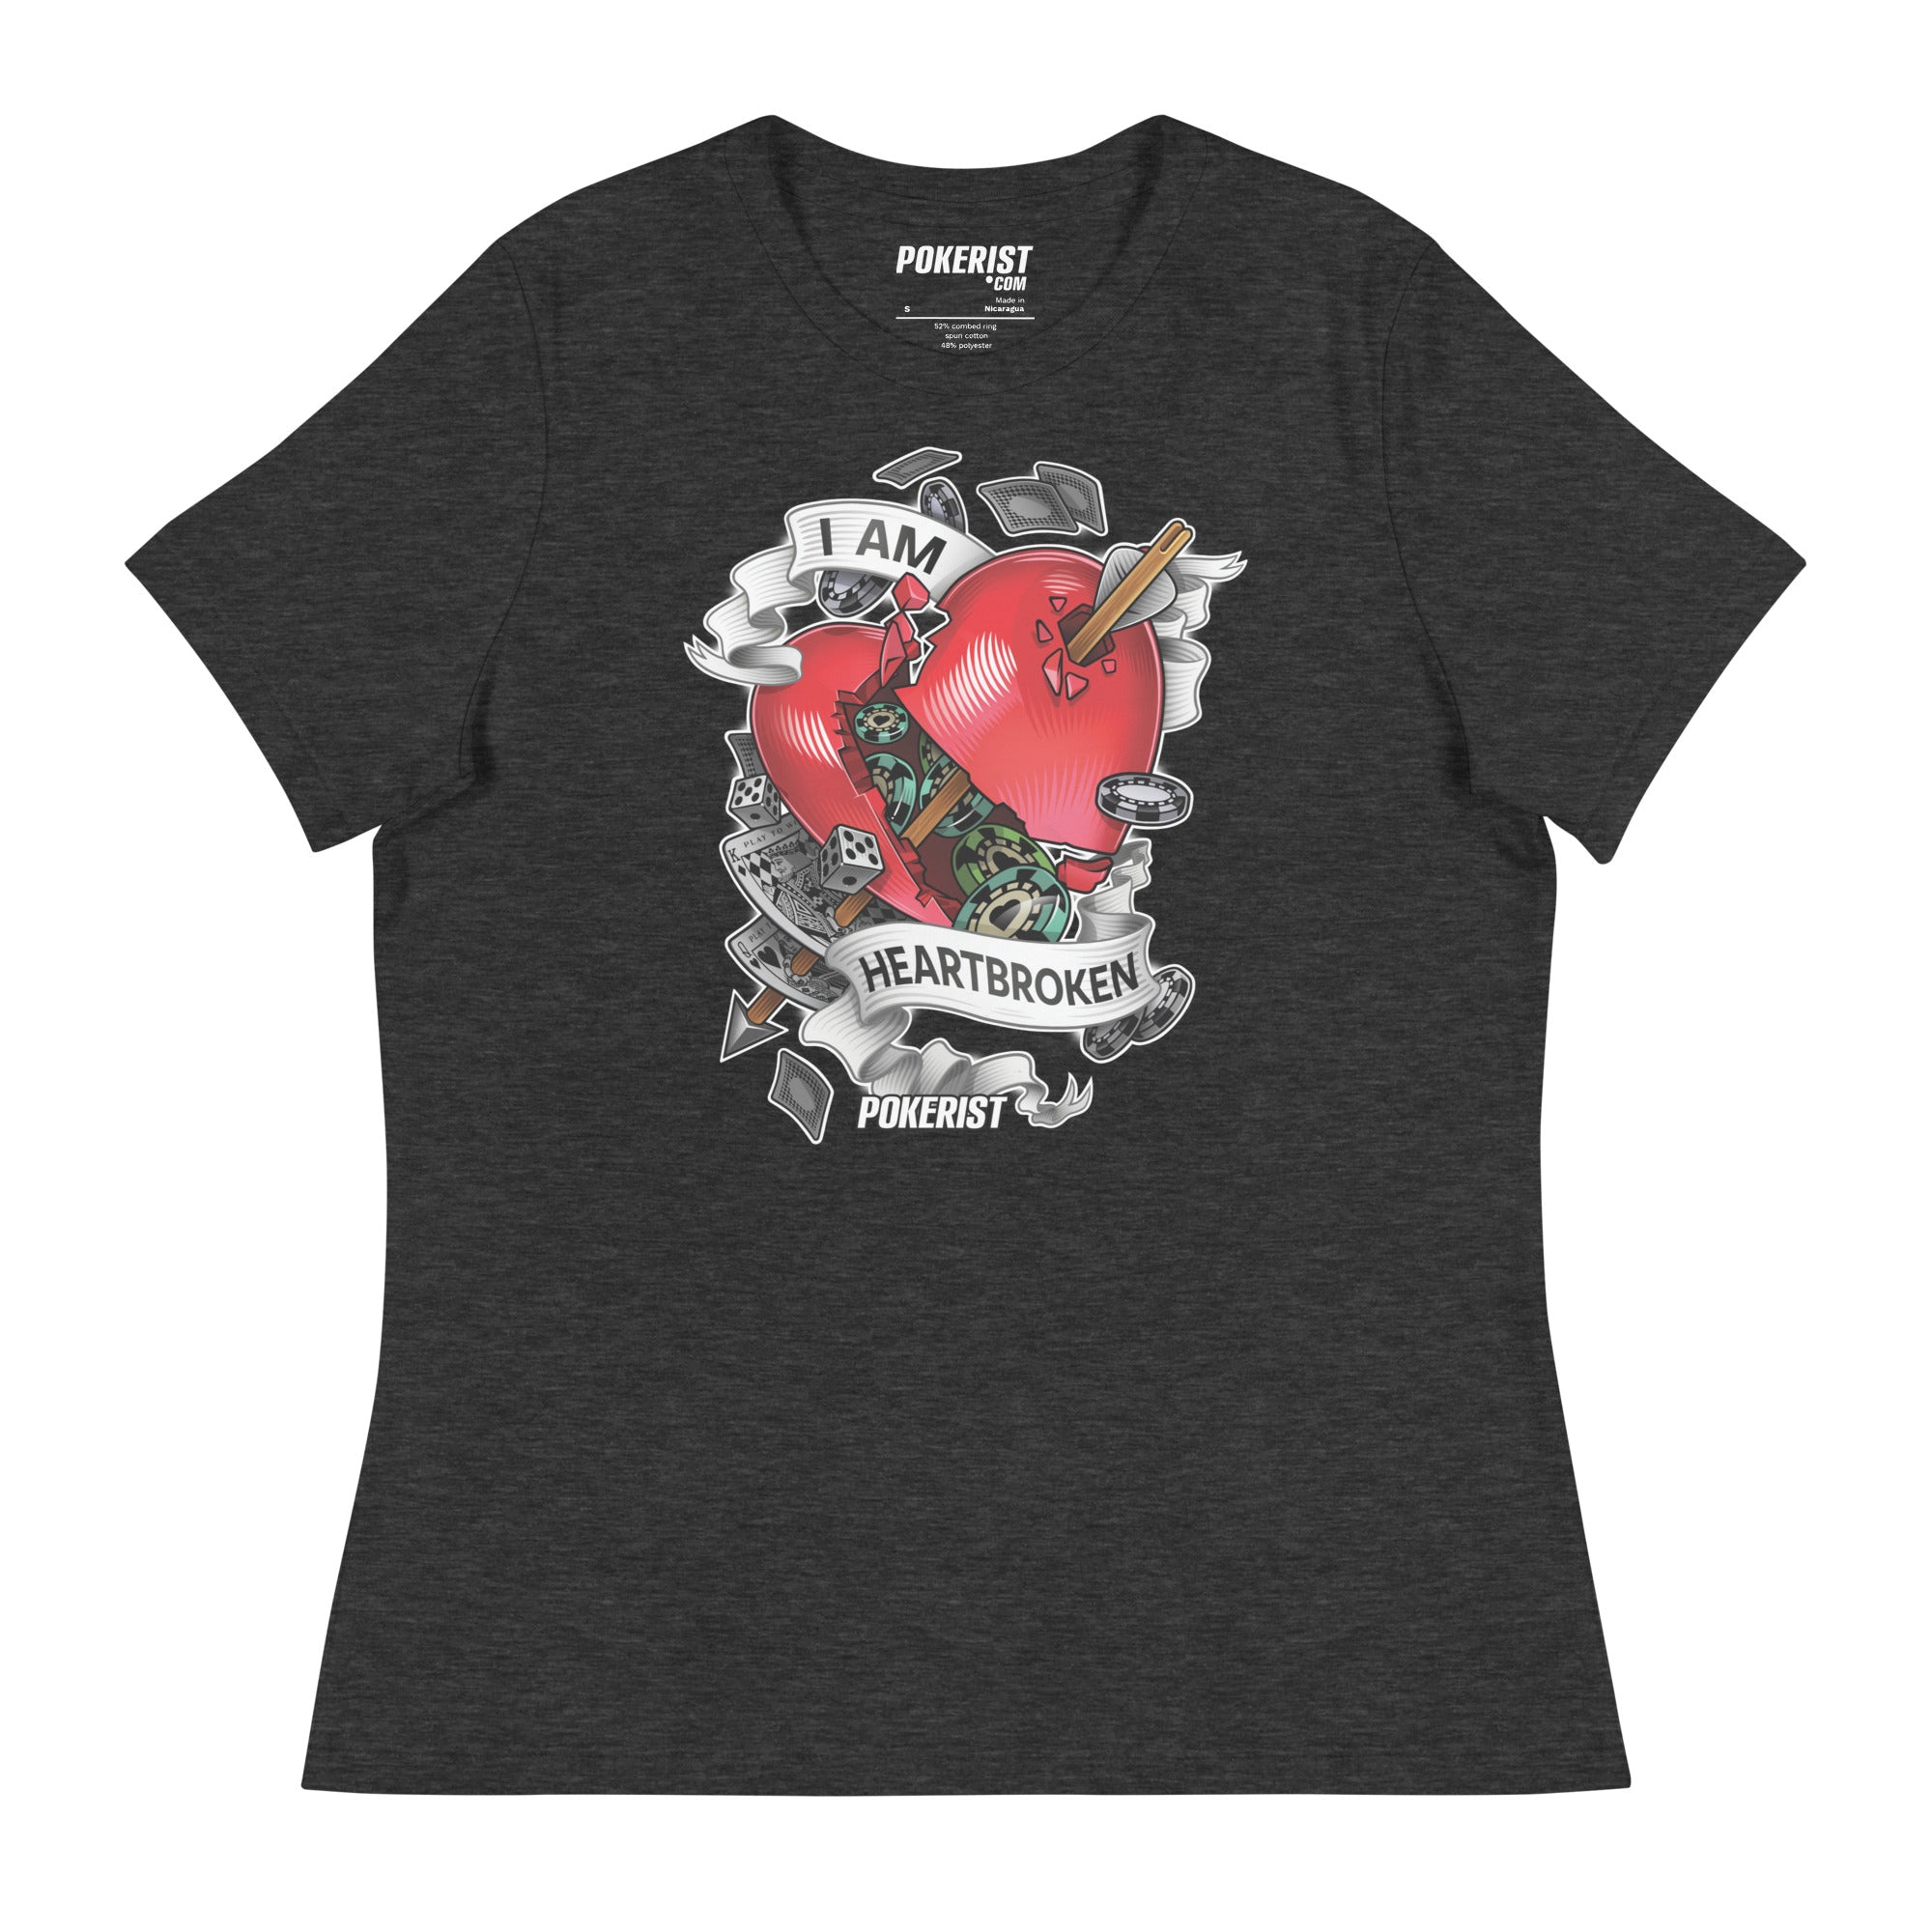 I am Heartbroken - Women's Relaxed T-Shirt